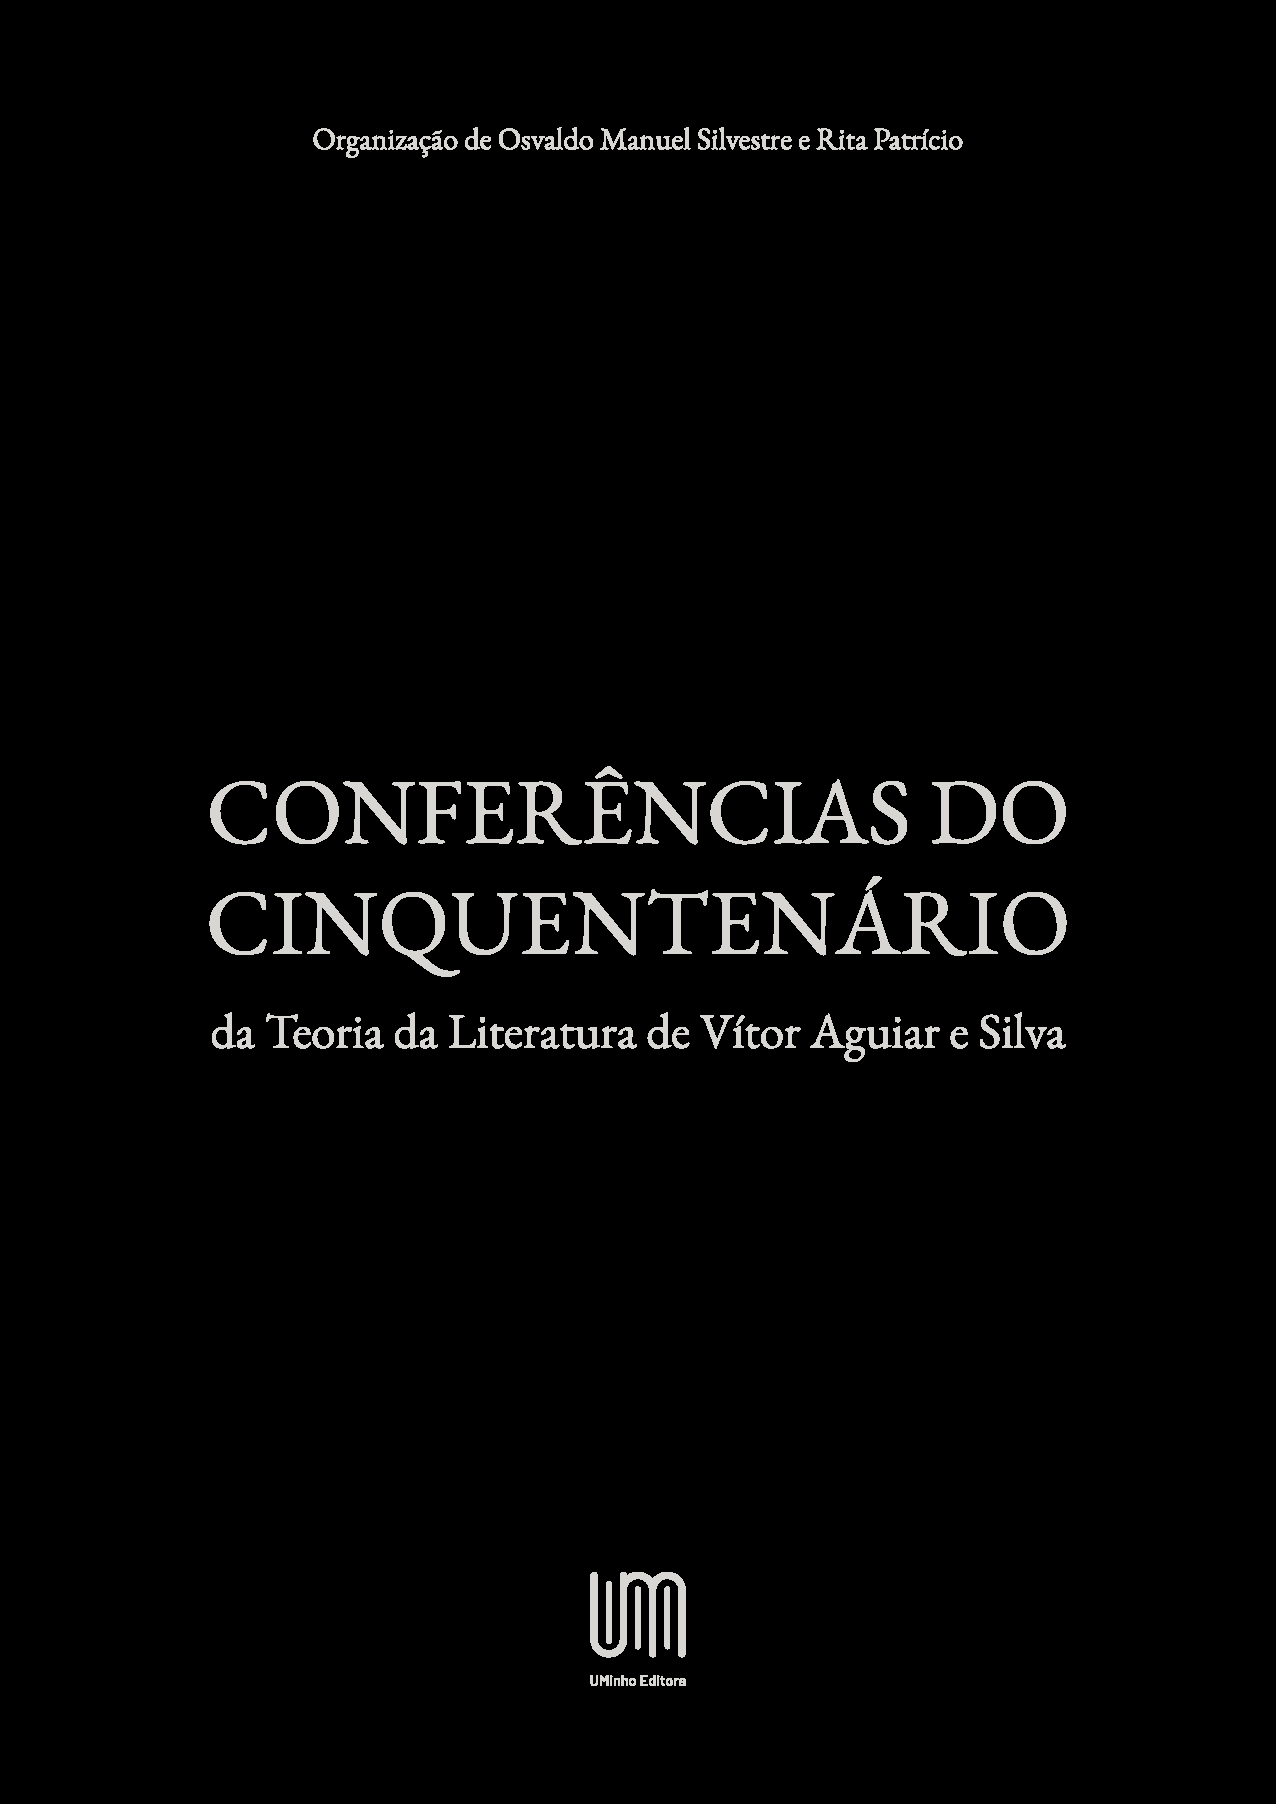 Imagen de portada del libro Conferências do Cinquentenário da Teoria da Literatura de Vítor Aguiar e Silva